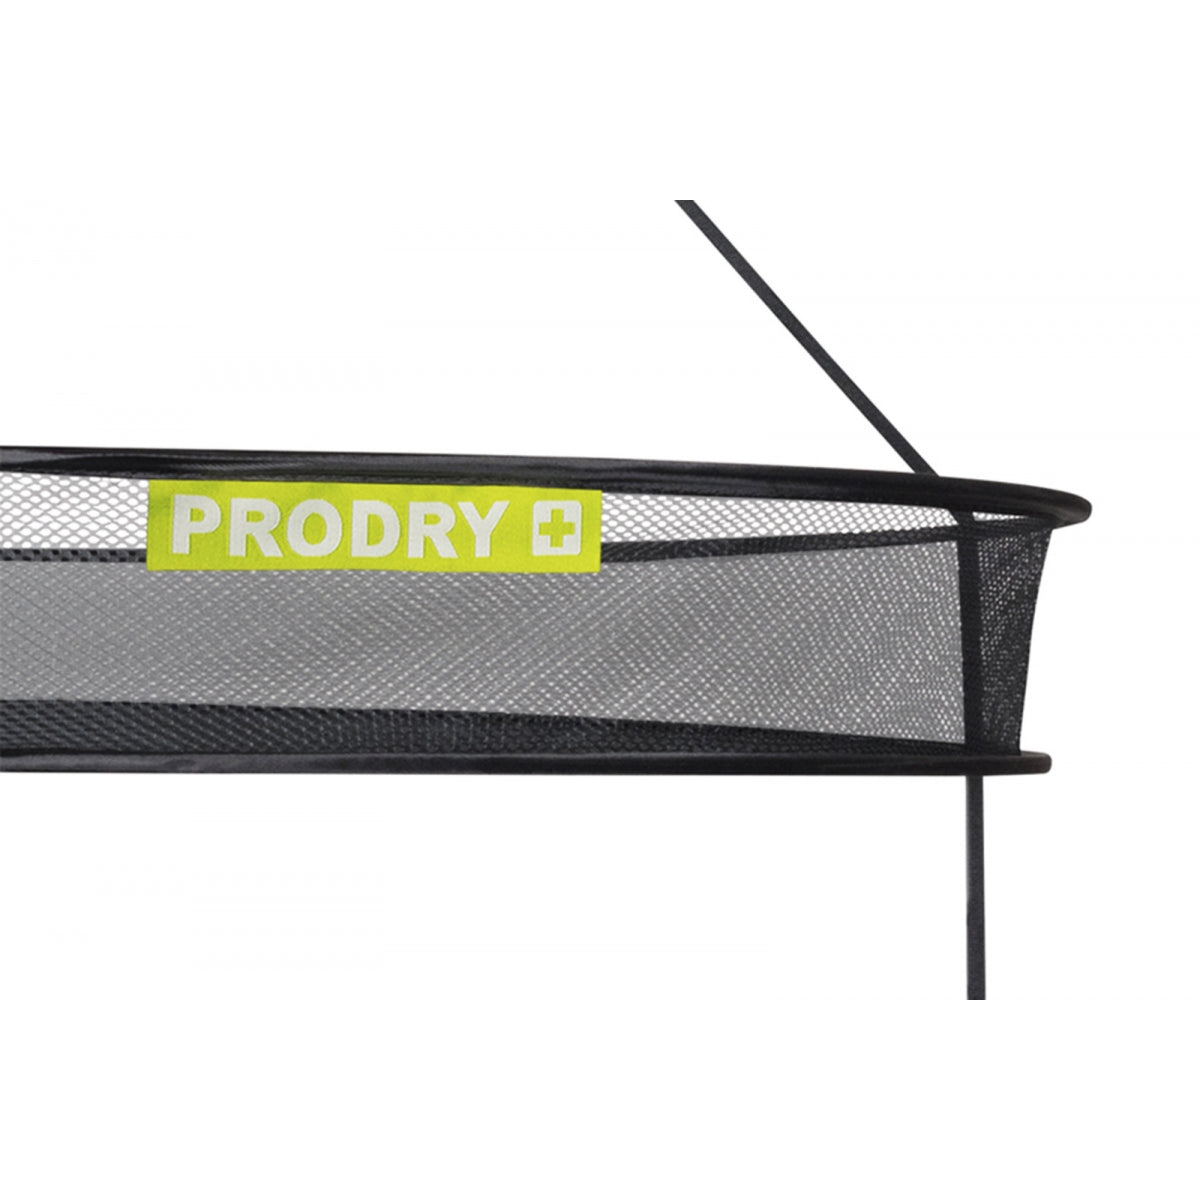 PRODRY-Trockner – 6 Ebenen, Durchmesser 95 cm